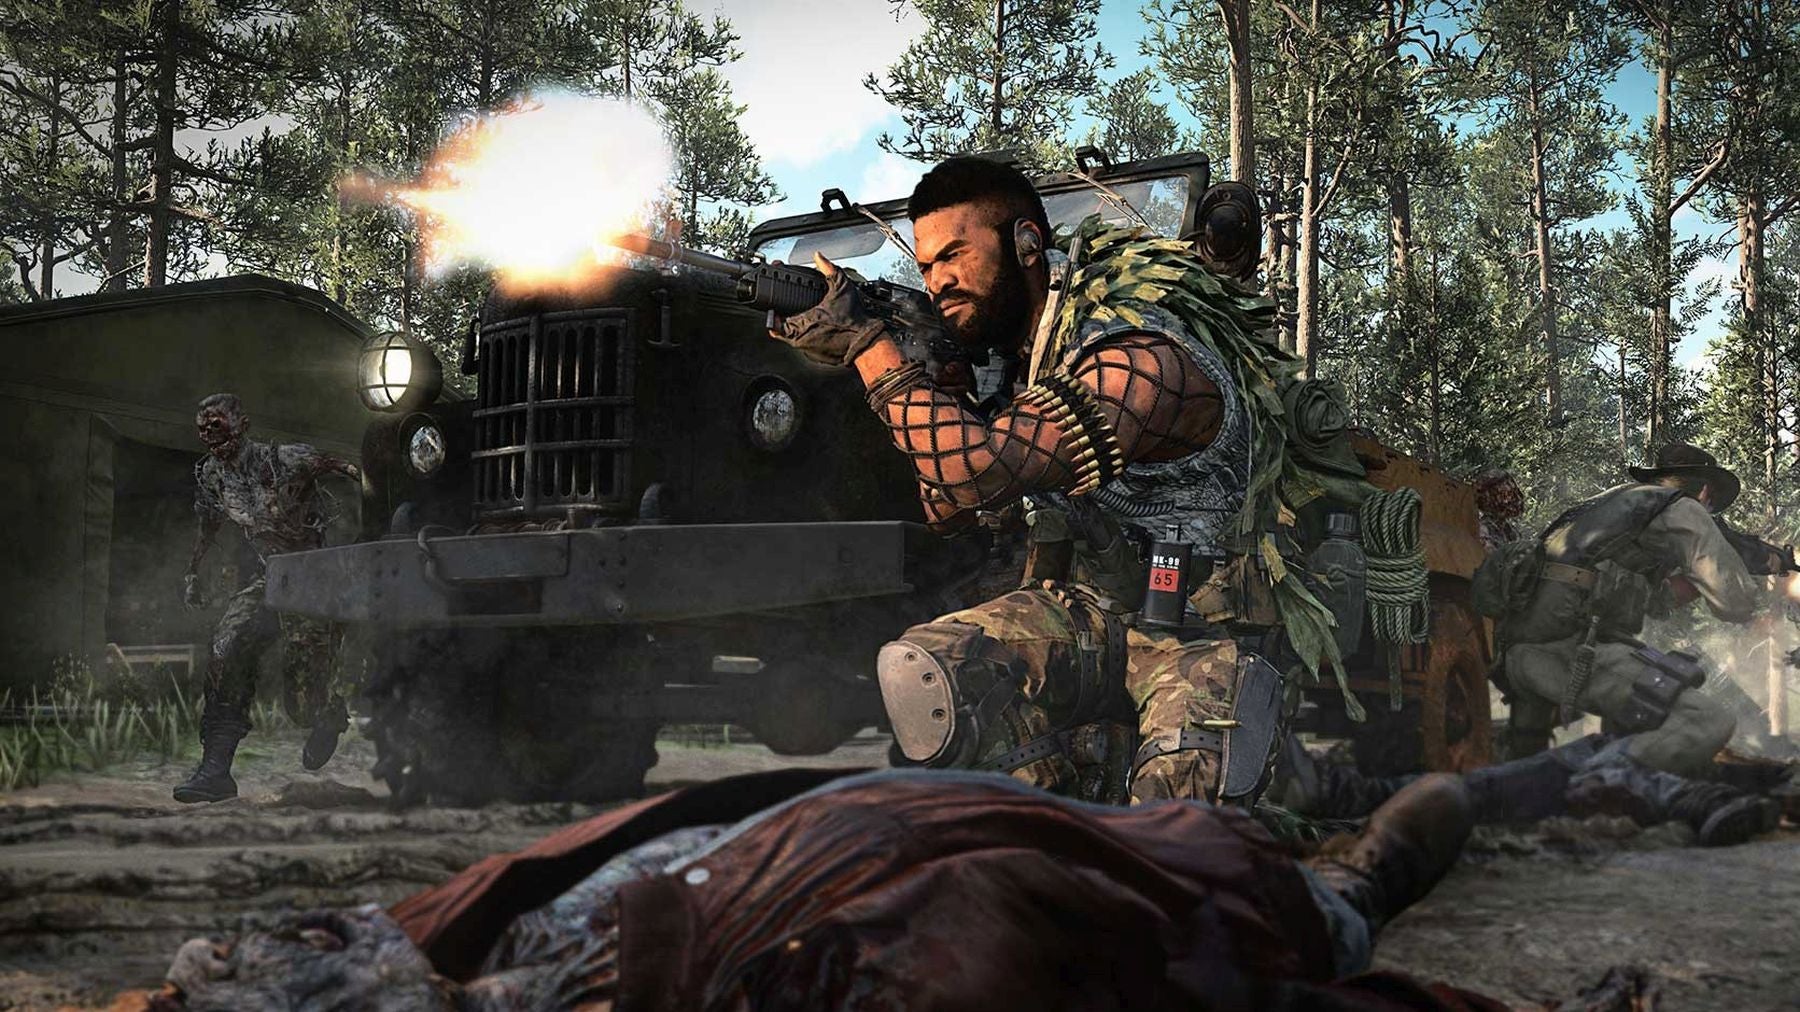 Bilder zu Call of Duty: Black Ops Cold War erhält heute die neue Dschungelkarte